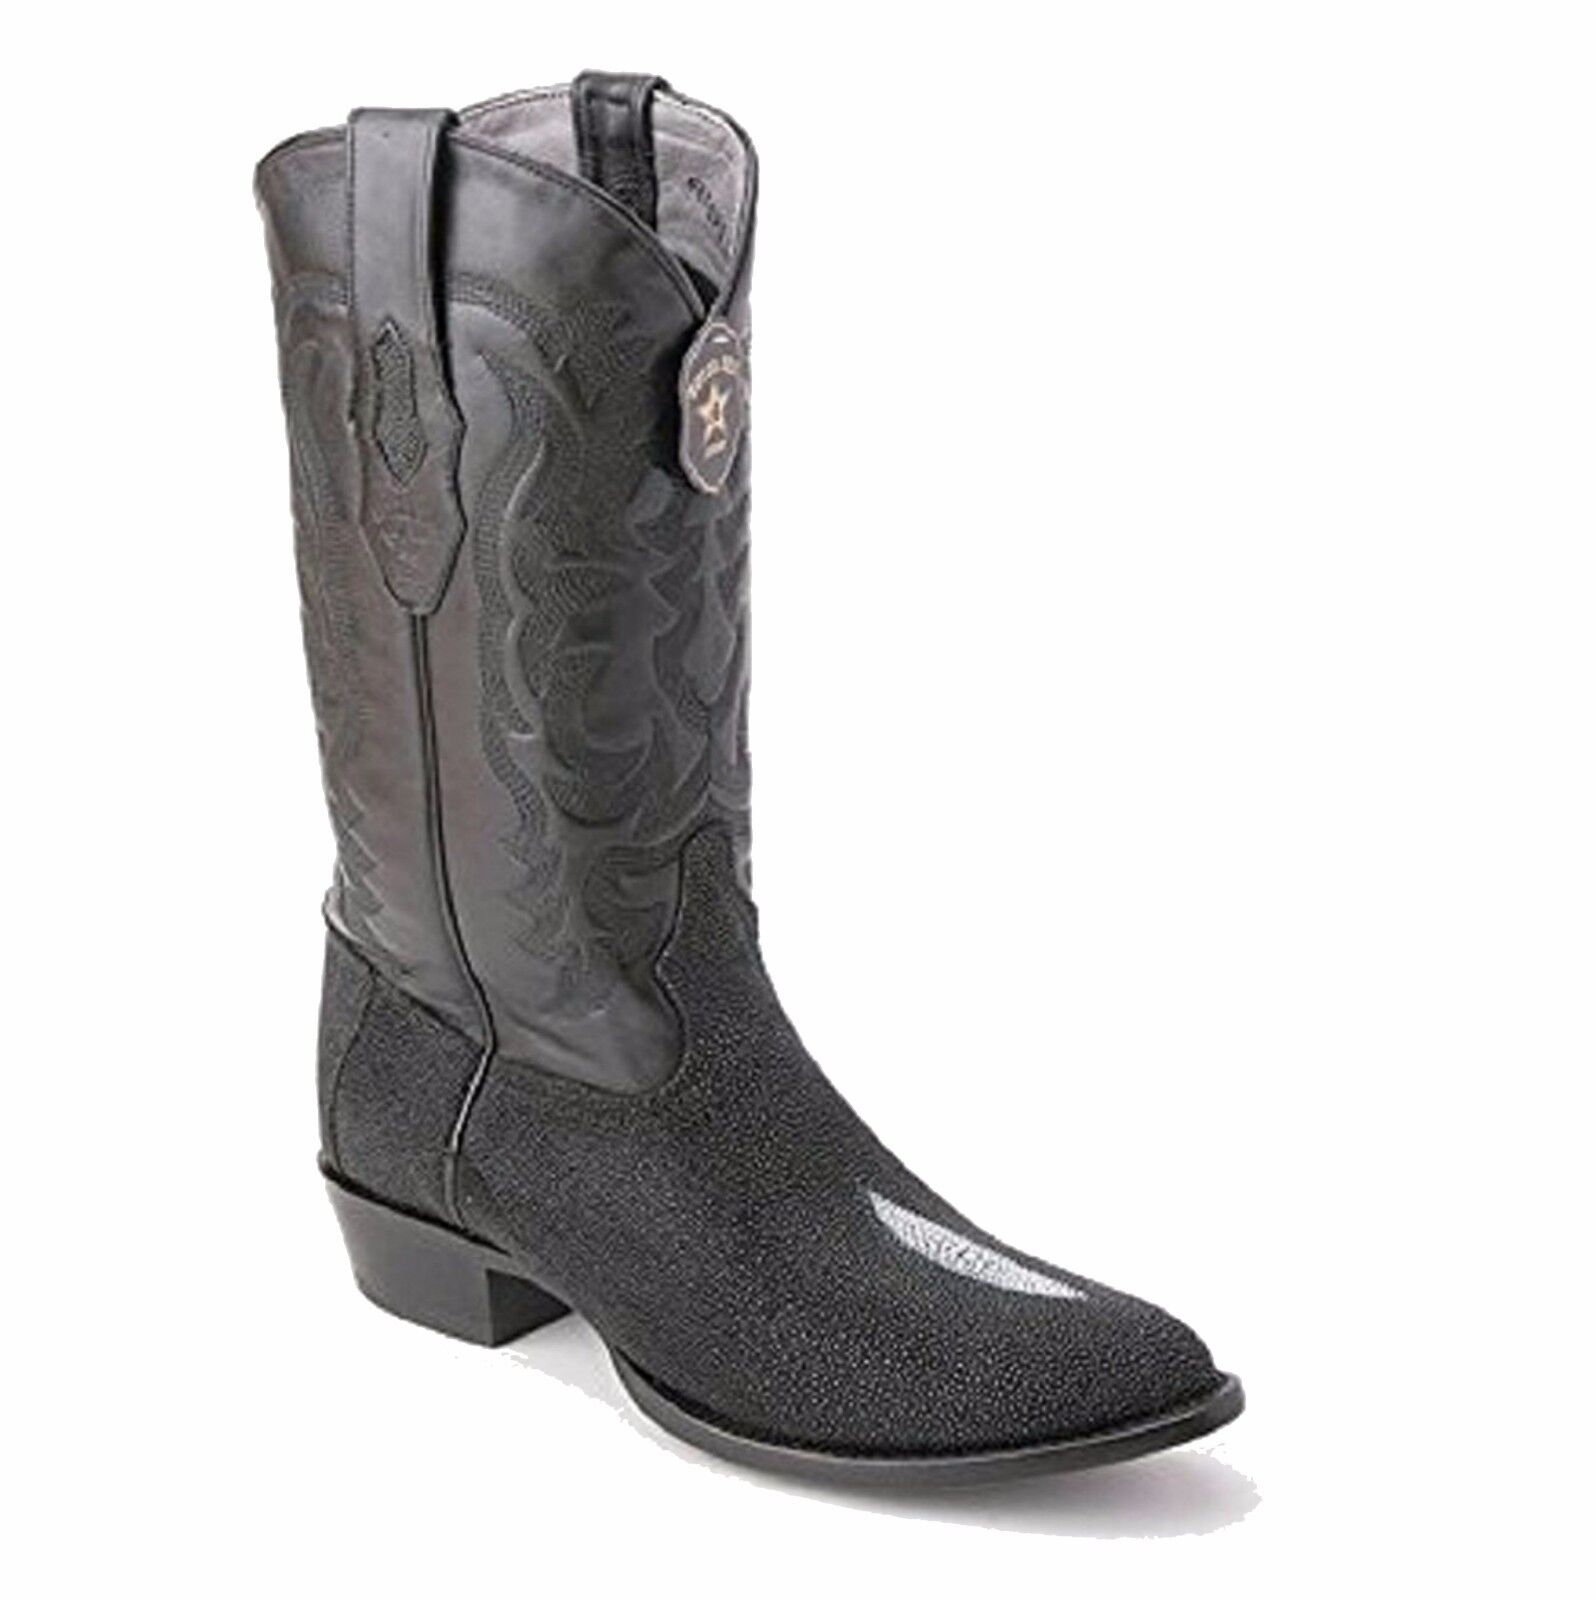 Pre-owned Los Altos Boots Los Altos, Western, Cowboys Men Exotic Stingray, H-65 Round Toe Boots, See Note In Black 651205